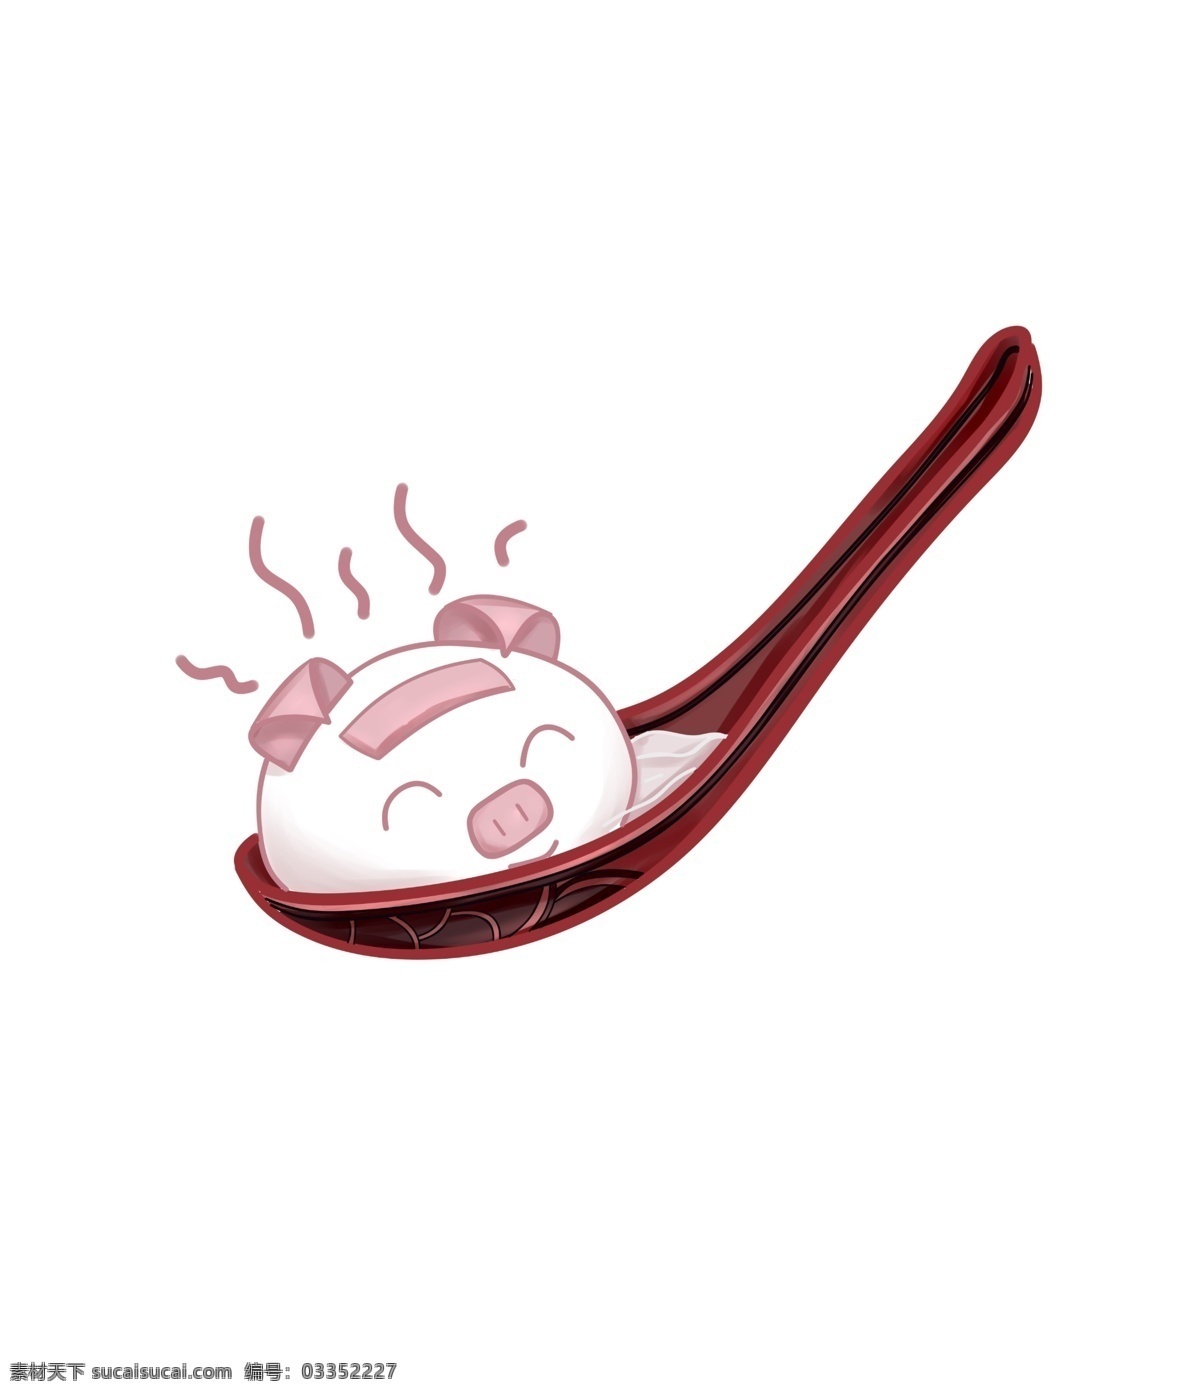 可爱 汤圆 猪 宝宝 插画 可爱的猪宝宝 小猪猪 卡通汤圆 勺子里的汤圆 吃汤圆 睡觉的猪宝宝 深红色勺子